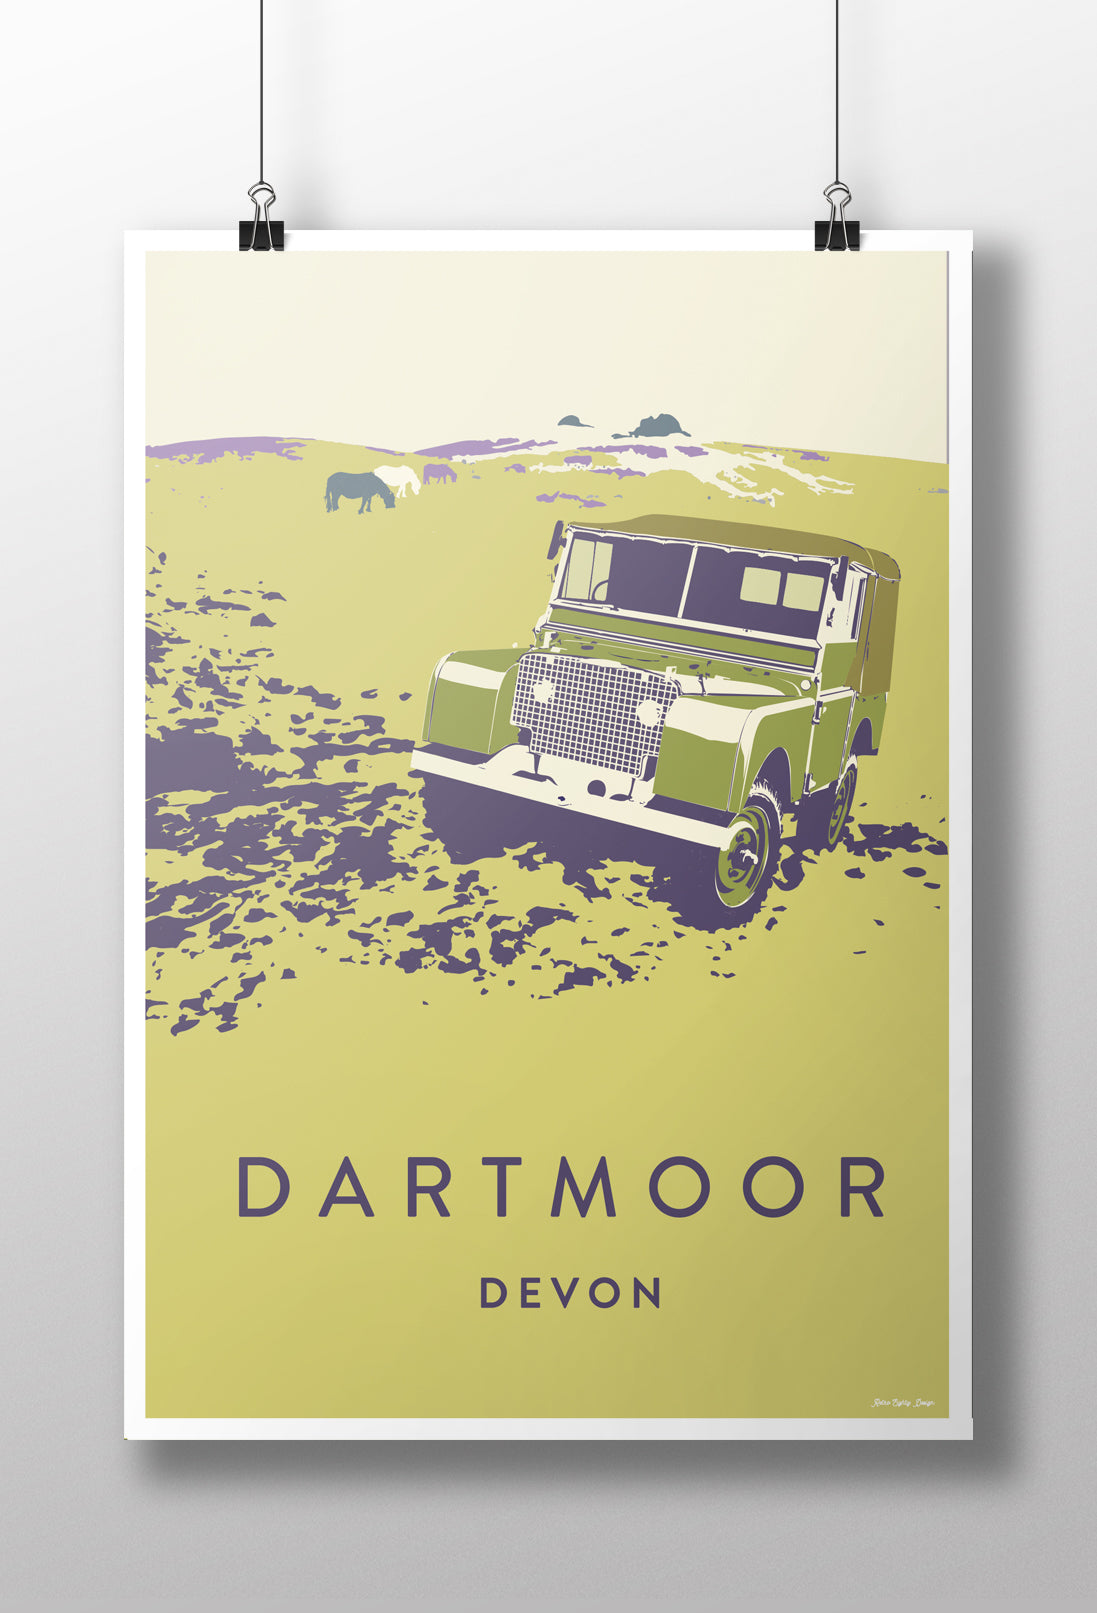 'Dartmoor' prints